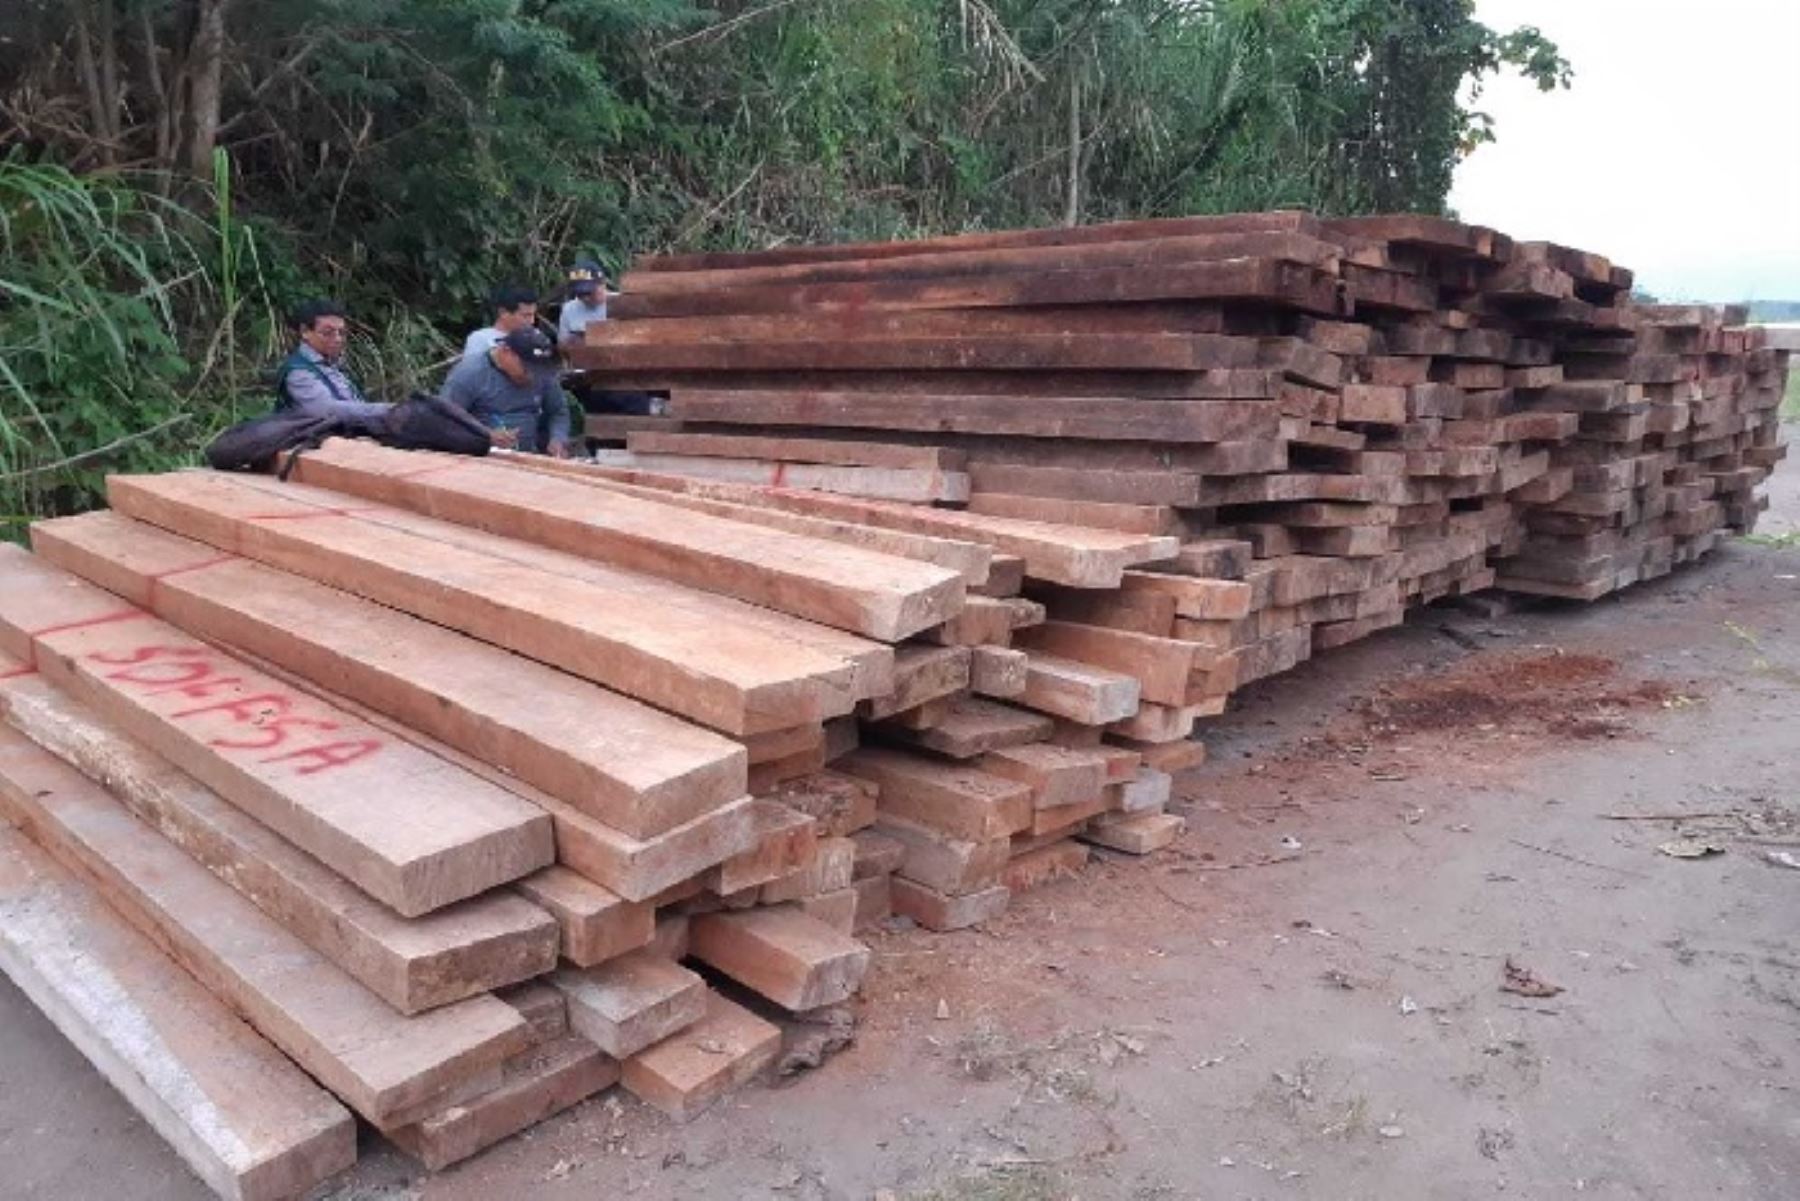 En tres operativos por tráfico ilícito de productos forestales maderables en Cusco, Huánuco y Ucayali se incautó madera de varias especies y se detuvo a implicados.